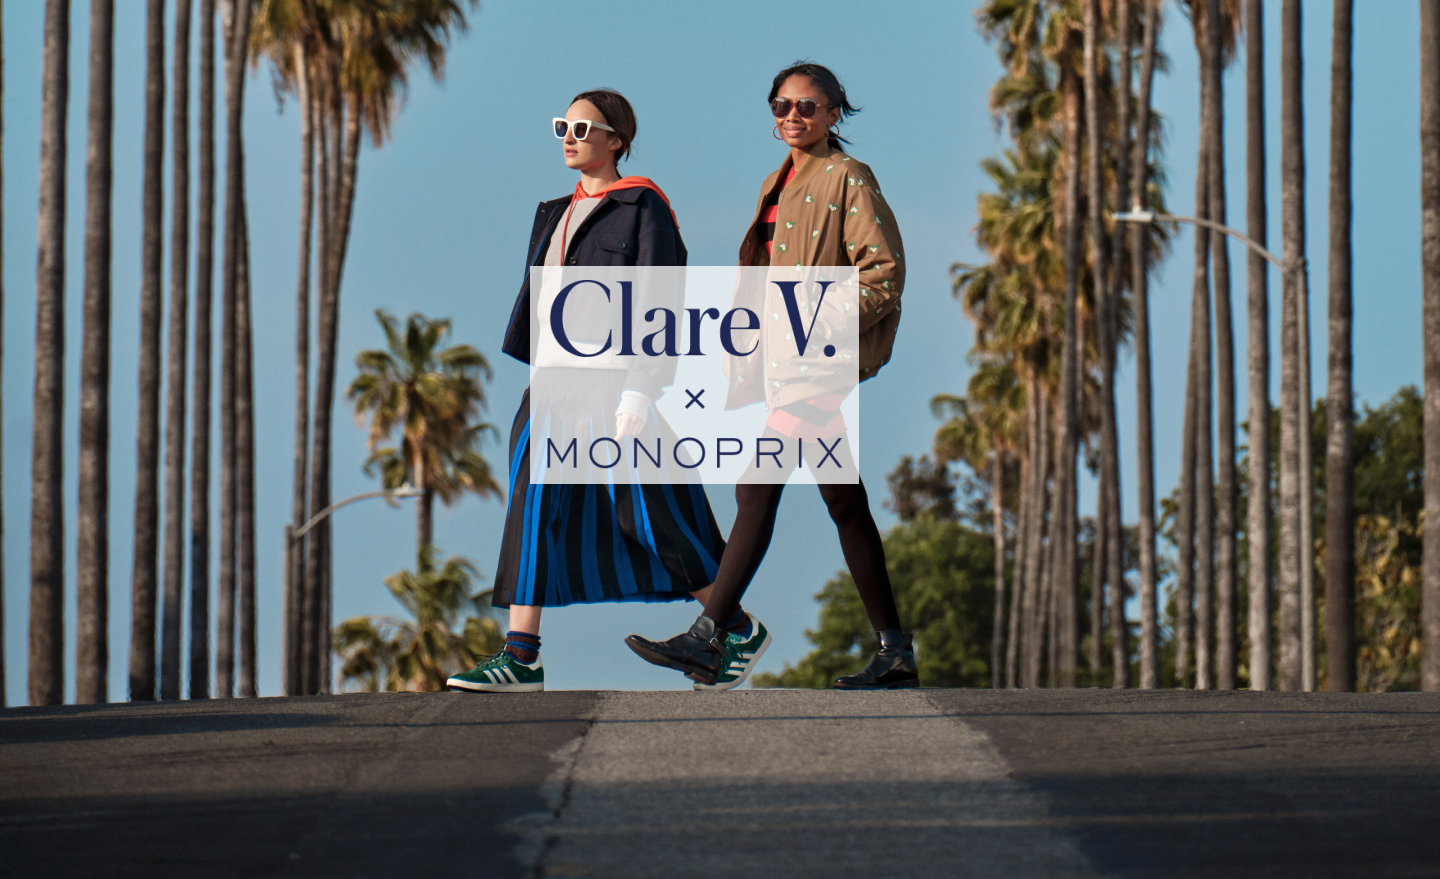 Monoprix, Clare Vivier Collection Is Bringing L.A. to Paris – WWD